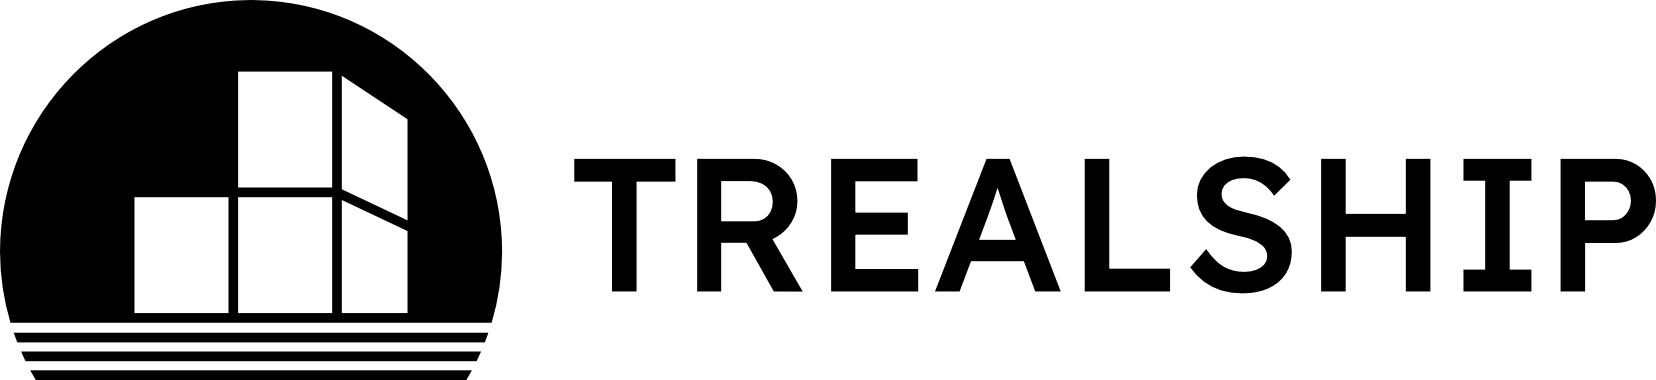 Trealship logo